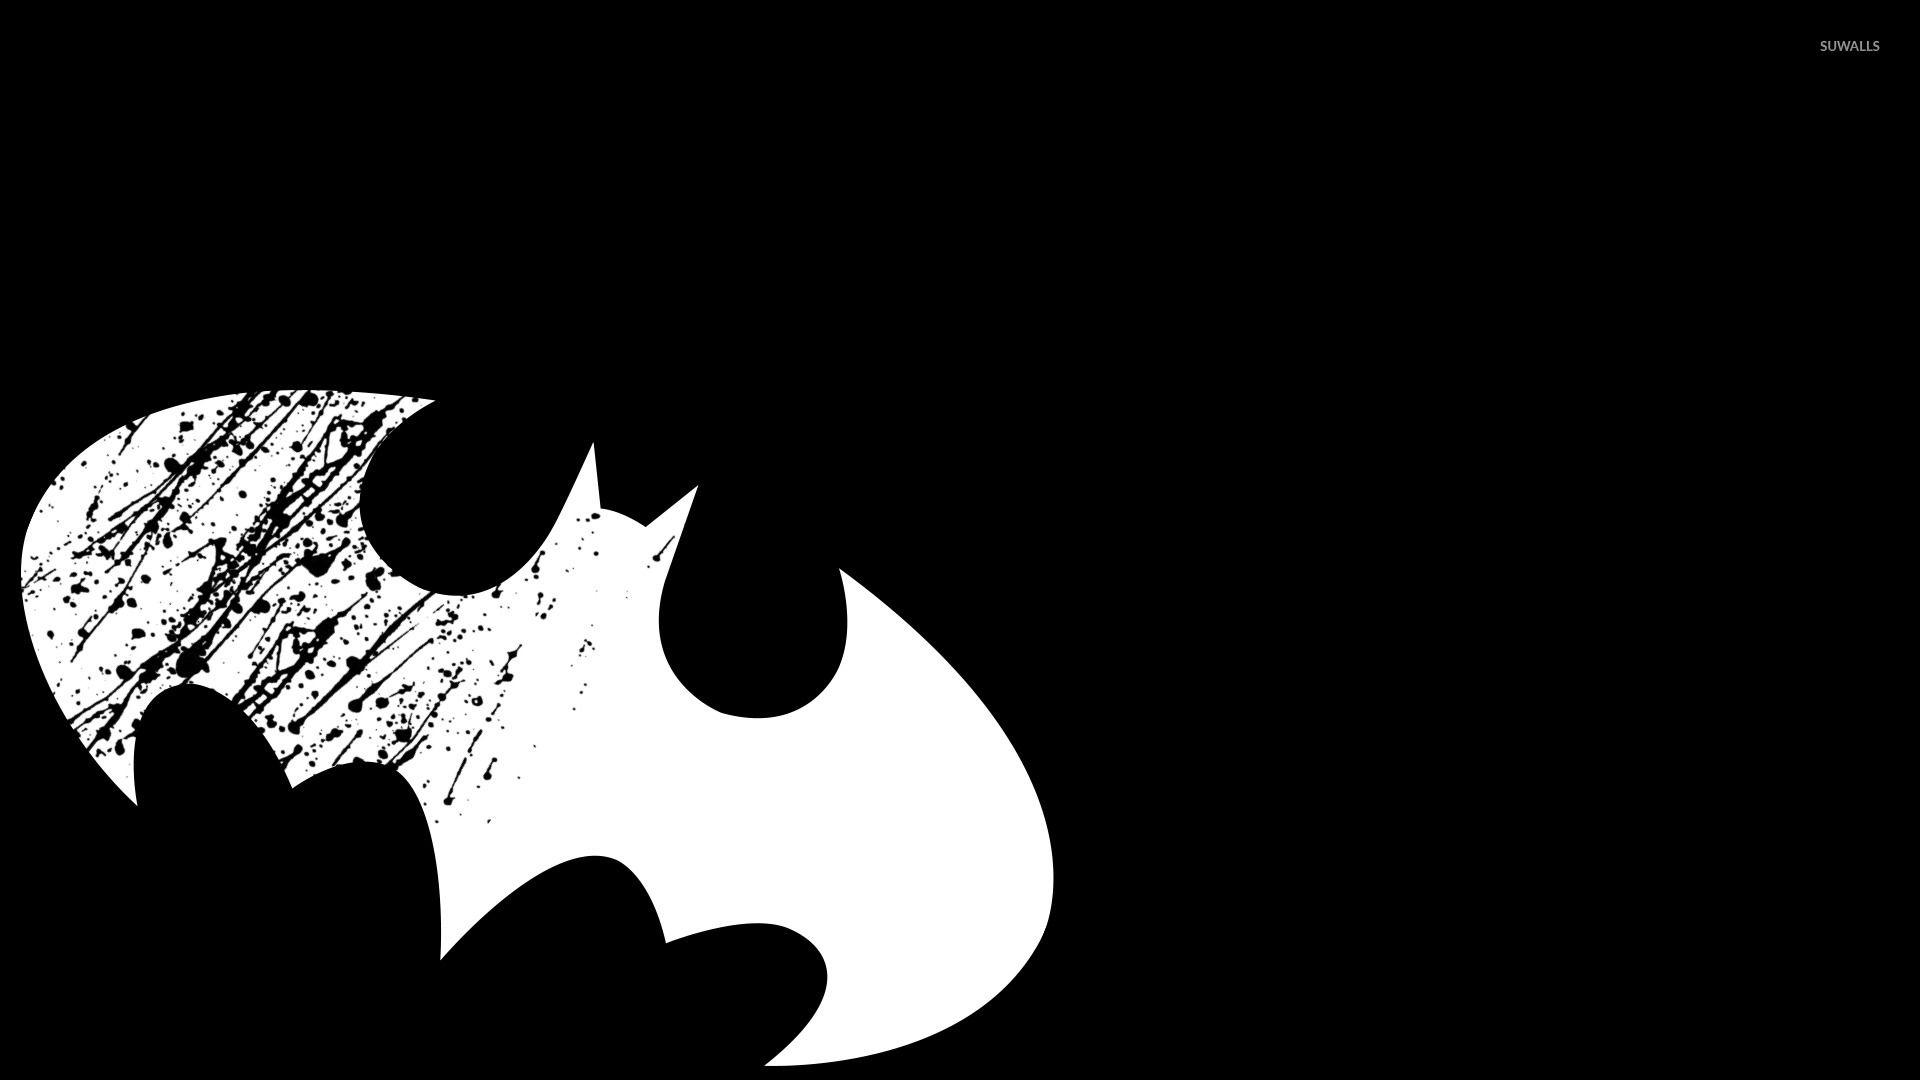 White Batman Logo - White Batman logo wallpaper - Comic wallpapers - #50045